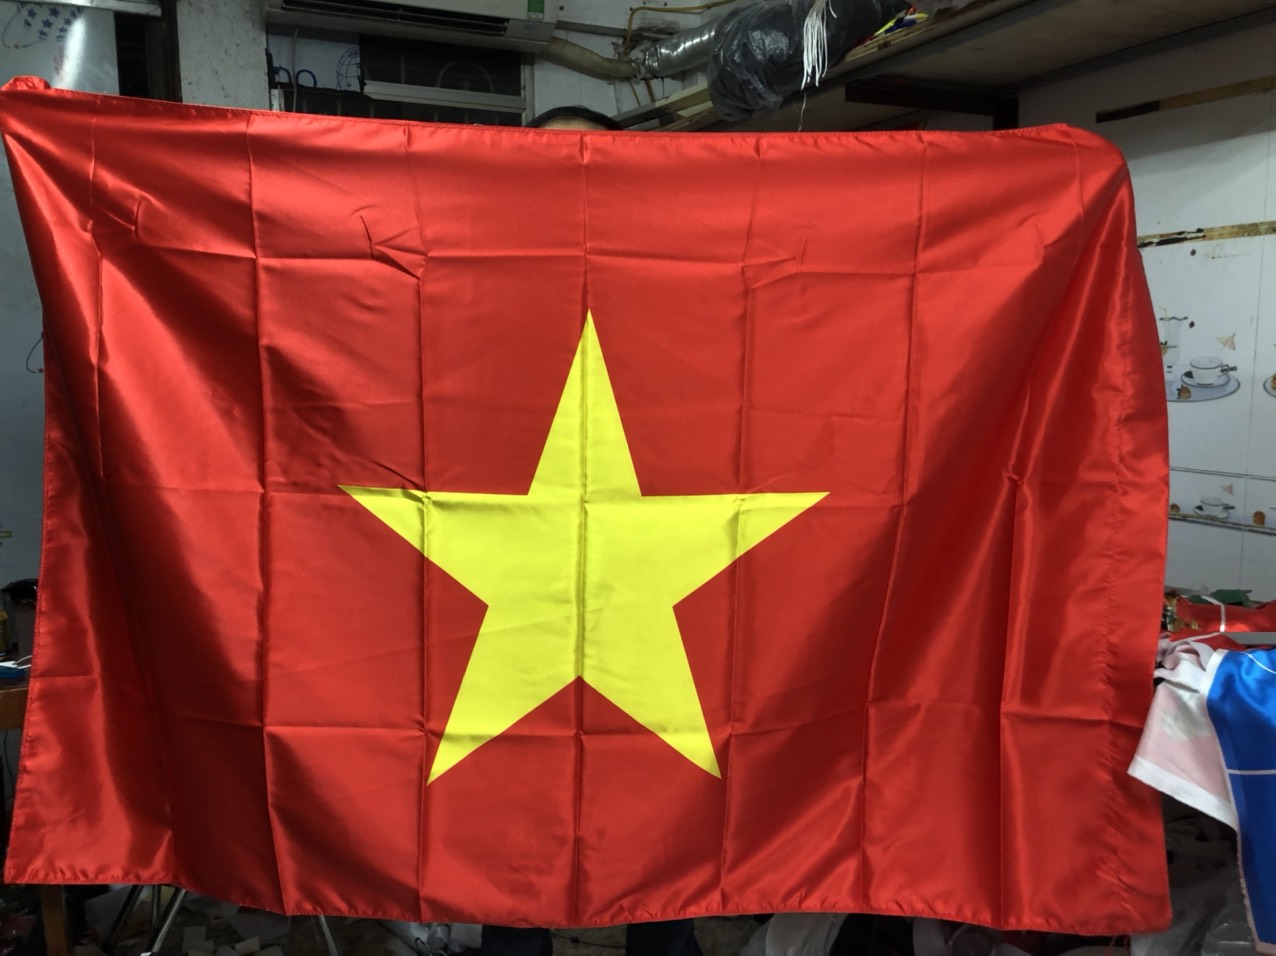 Cờ Việt in chuyển nhiệt 2 lớp 2 mặt. Kích Thước Lá Cờ 1.2 x 1.8m. Hoàng Gia in cờ theo yêu cầu tại Hà Nội